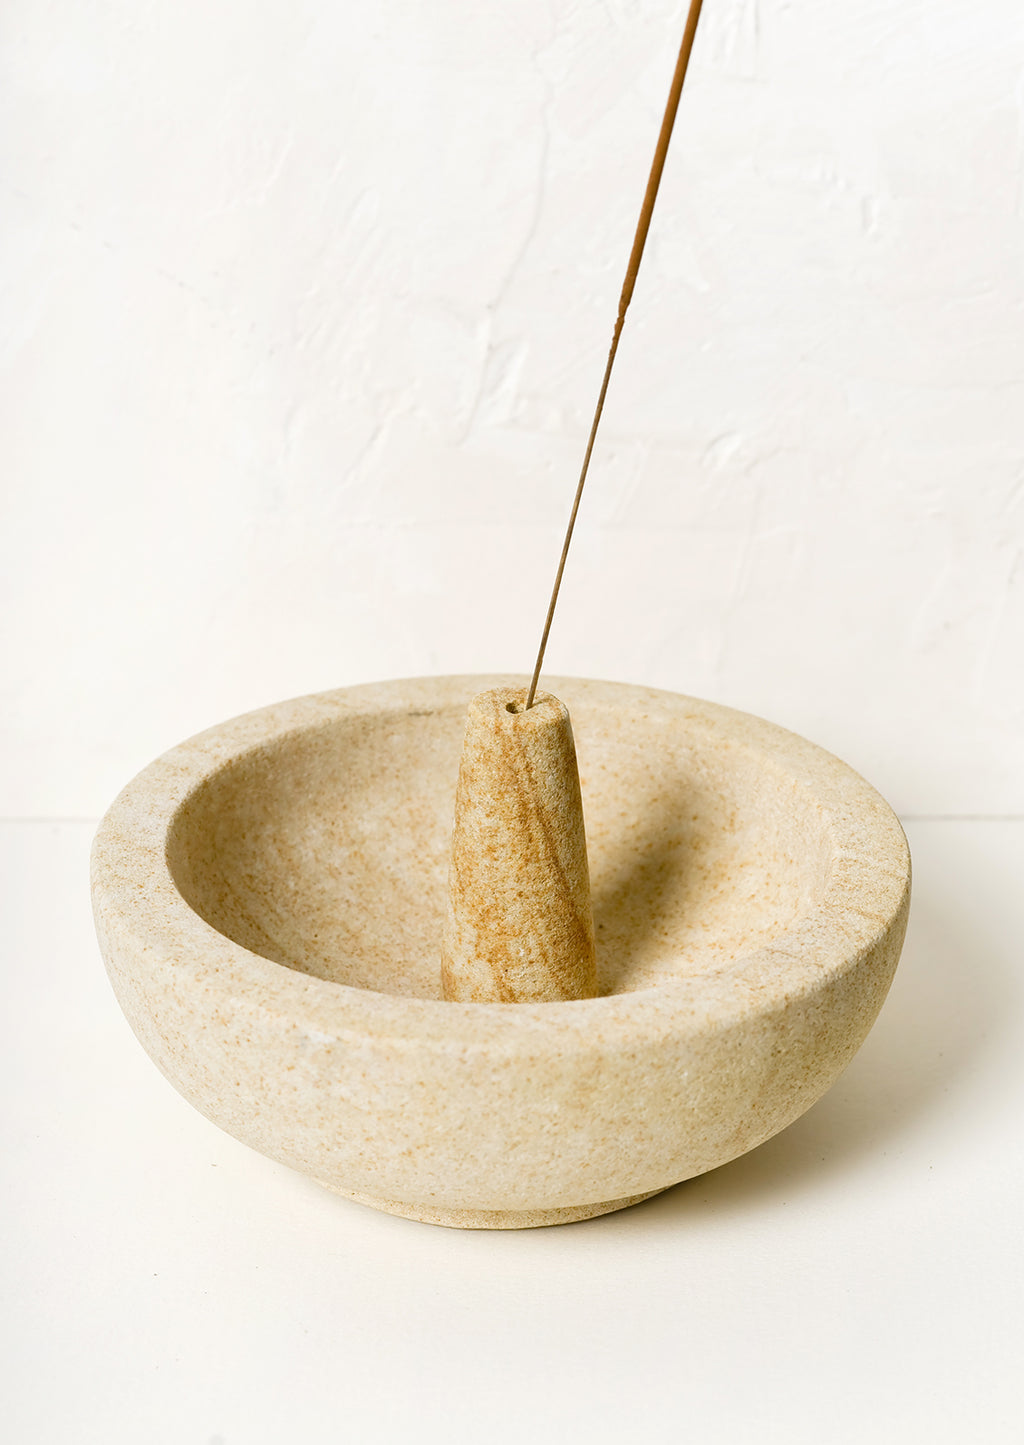 2: A sandstone incense burner with bowl for stick incense.